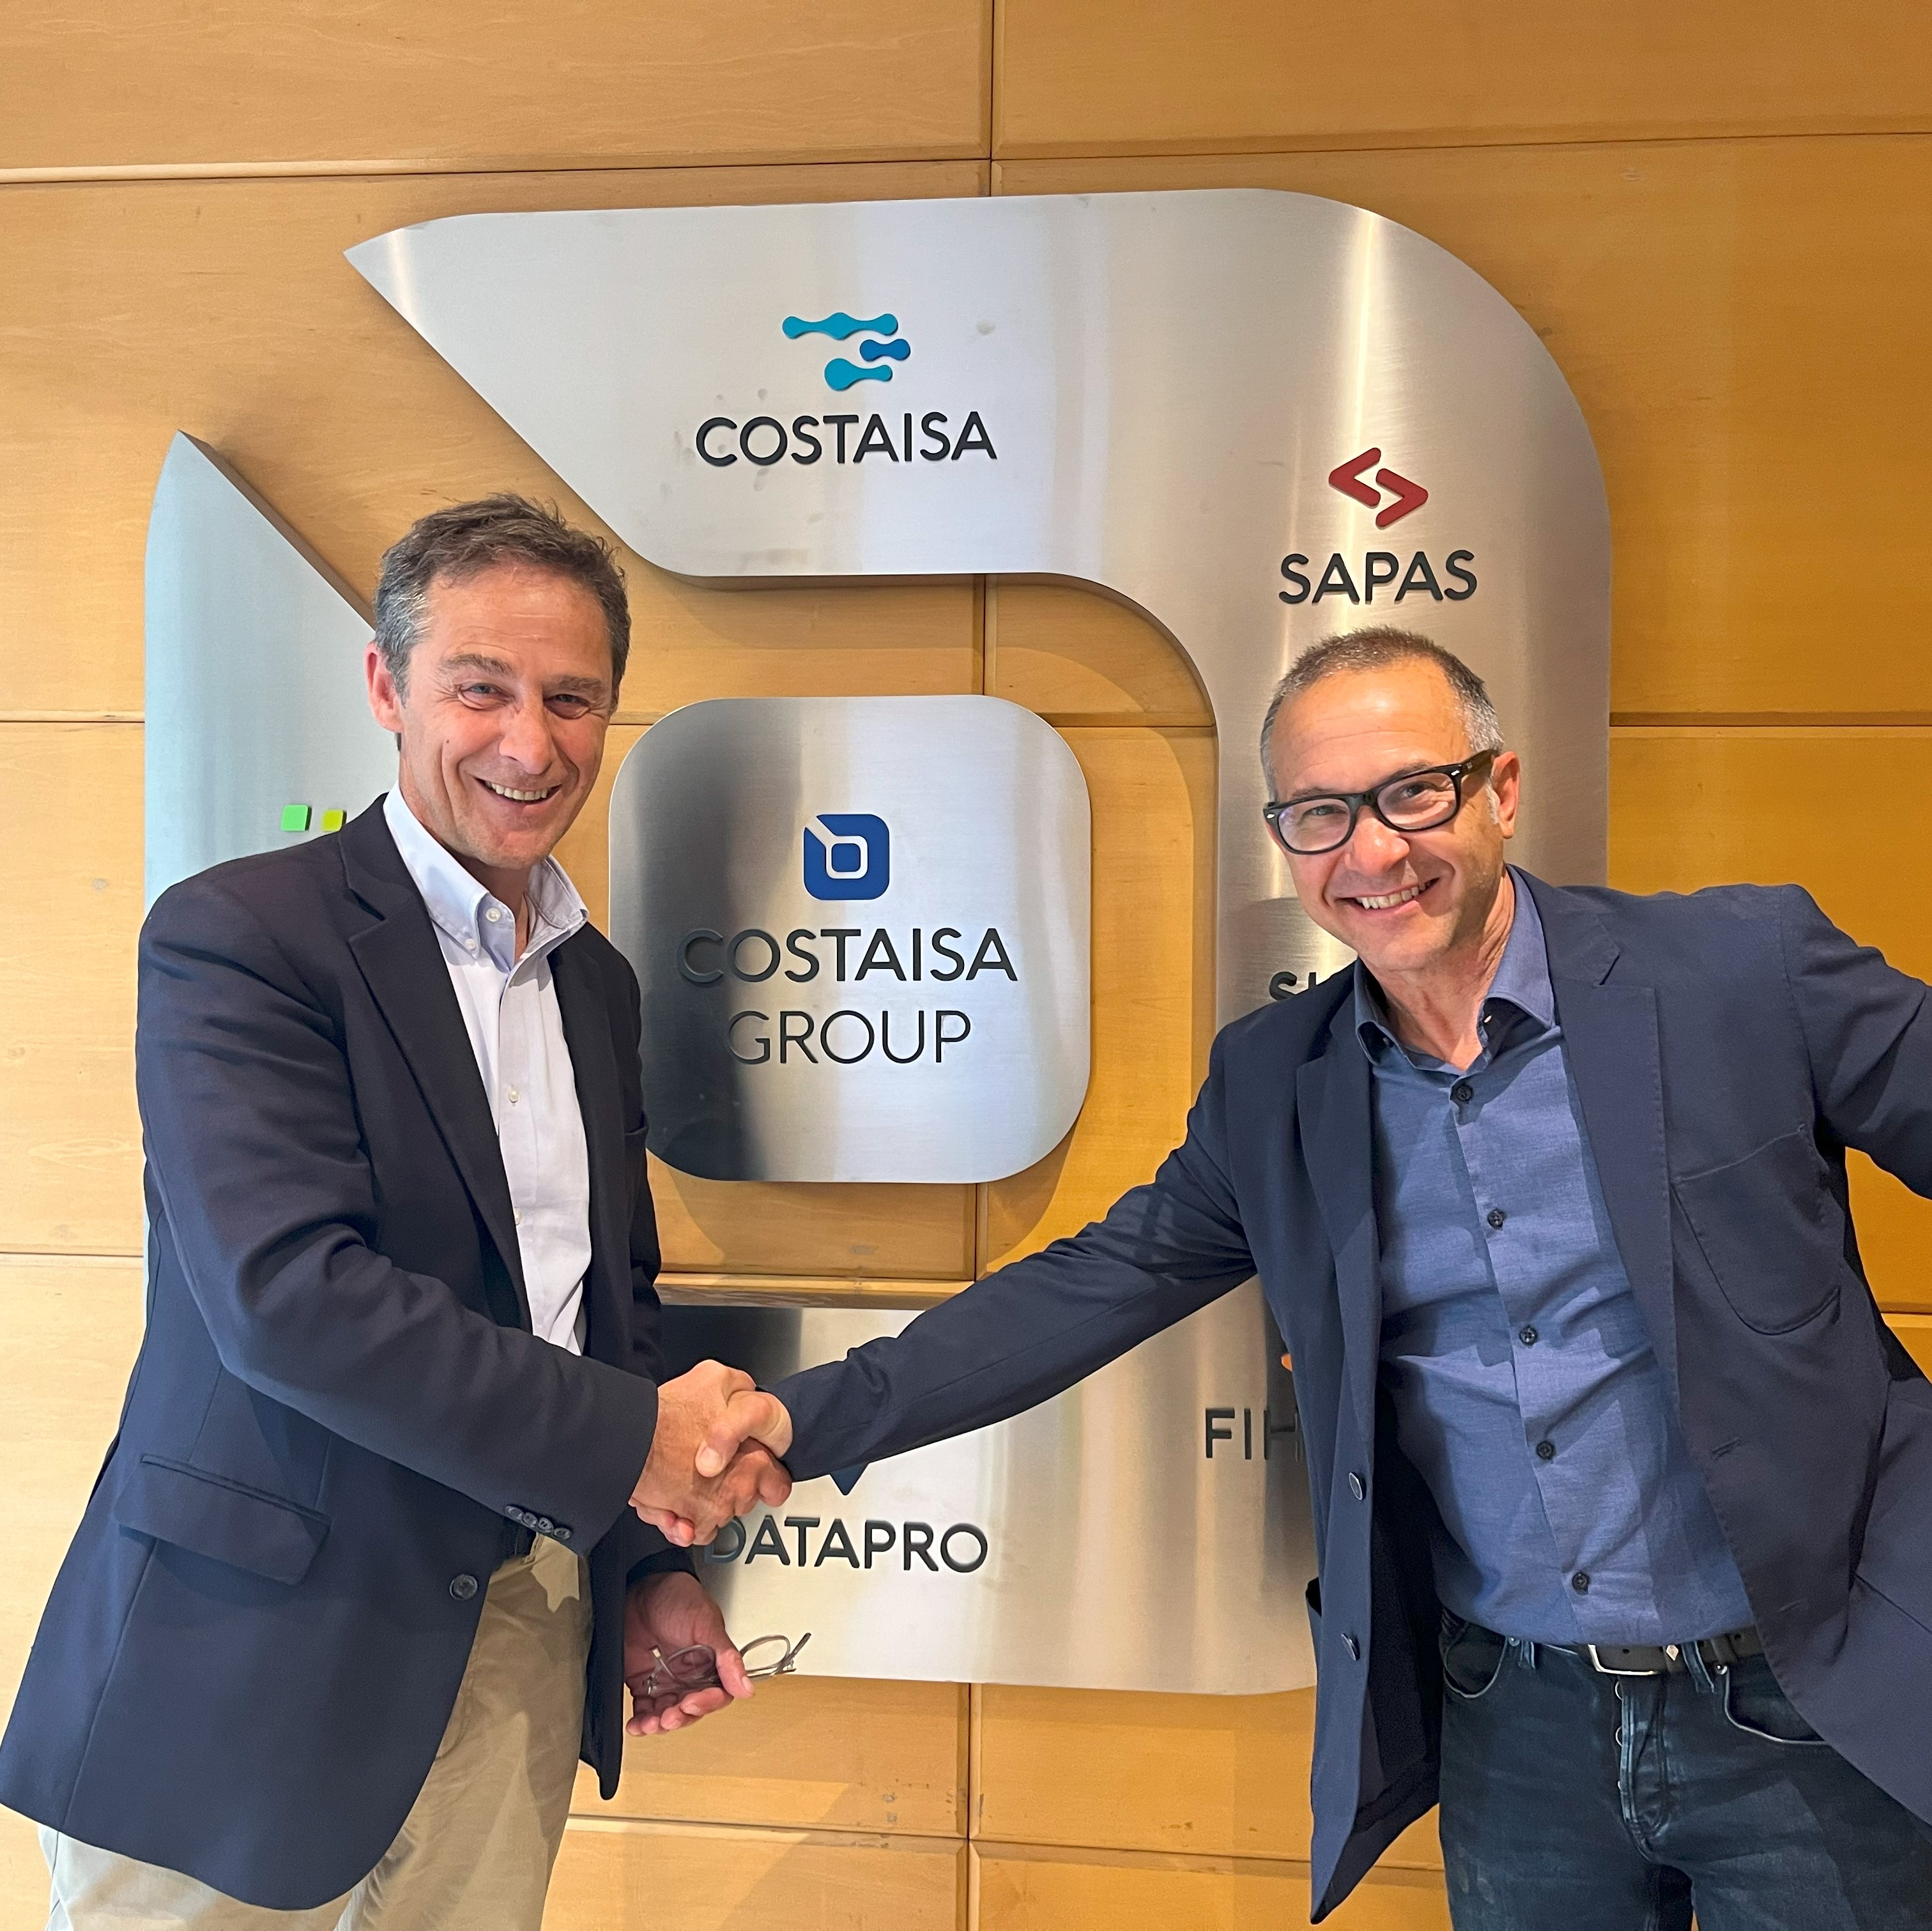 Davinci IT se joint au groupe Costaisa pour renforcer son engagement envers le développement de plateformes numériques sécurisées dans le cloud.